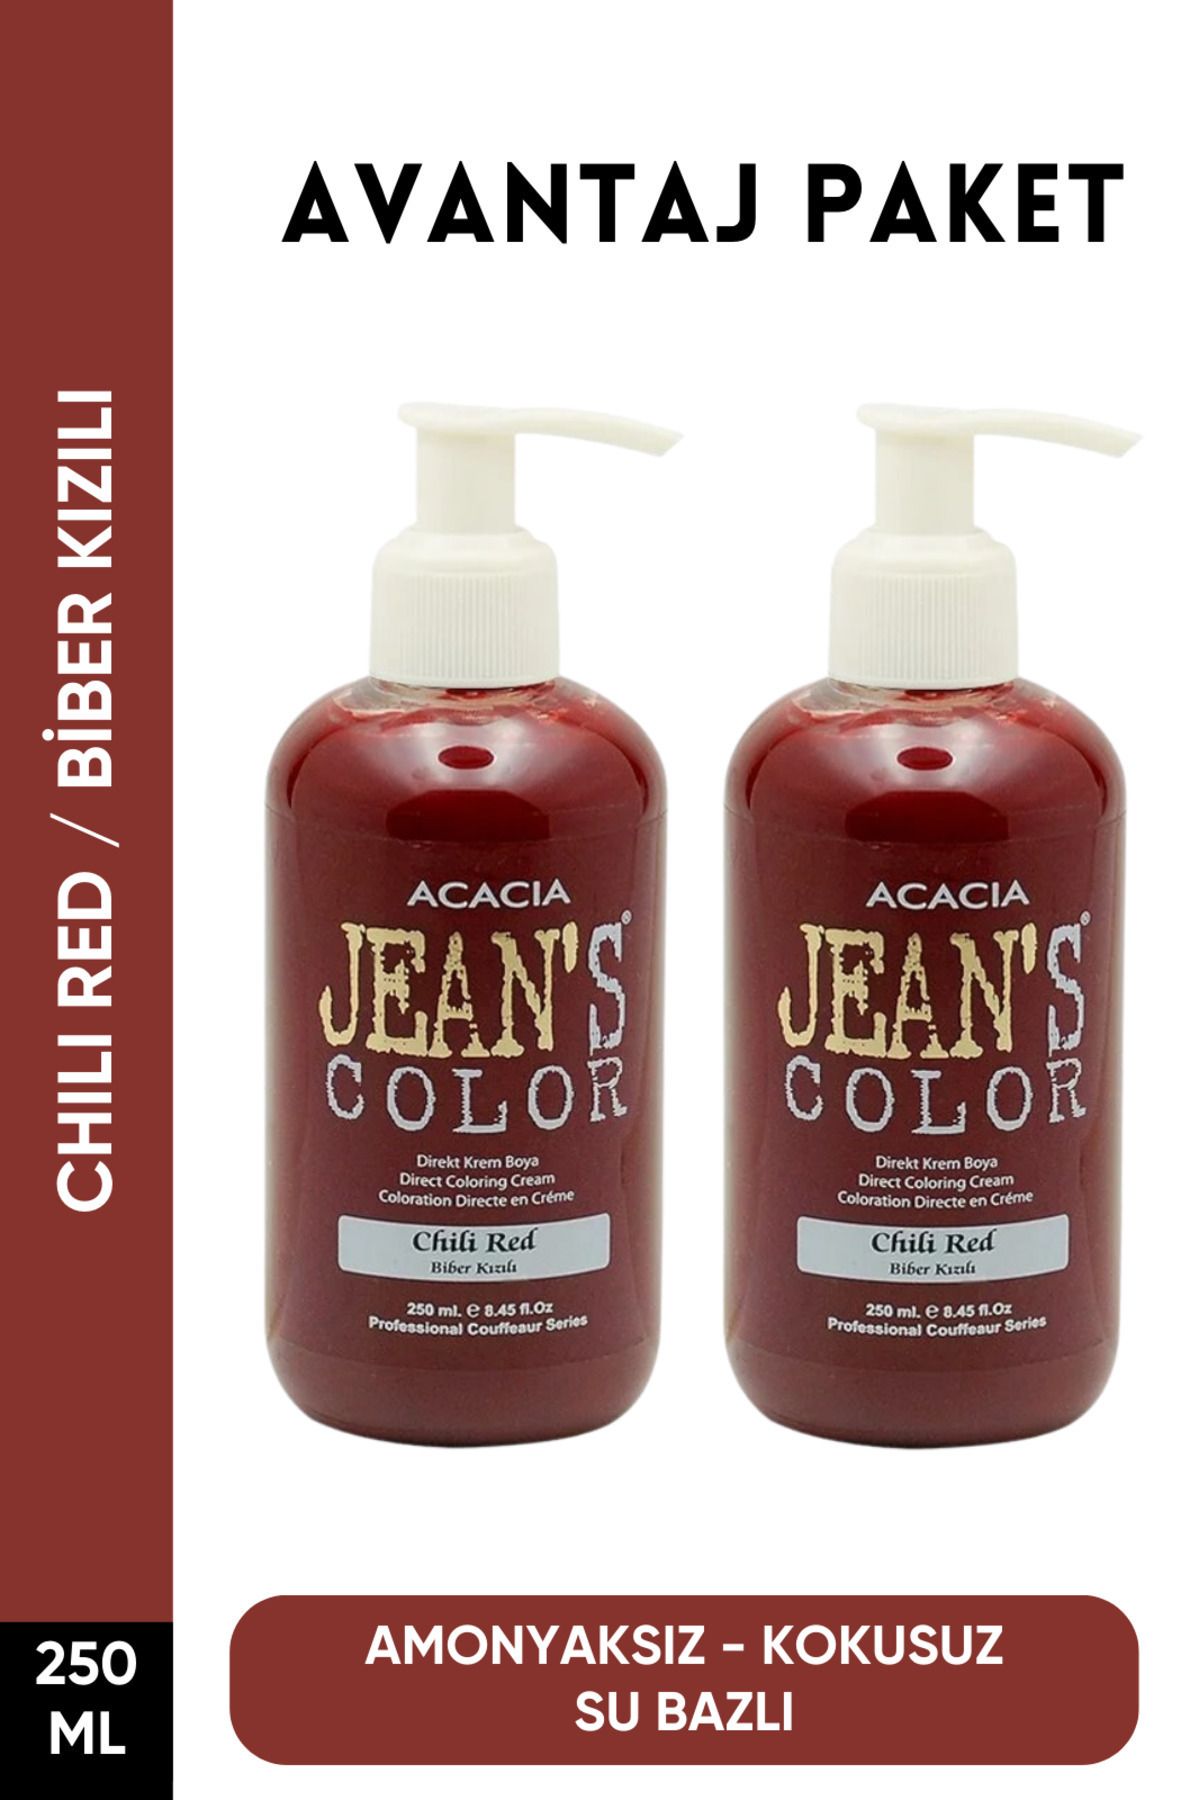 jeans color Amonyaksız Biber Kızılı Renkli Saç Boyası 250 Ml x2 Adet Kokusuz Su Bazlı Chili Red Hair Dye